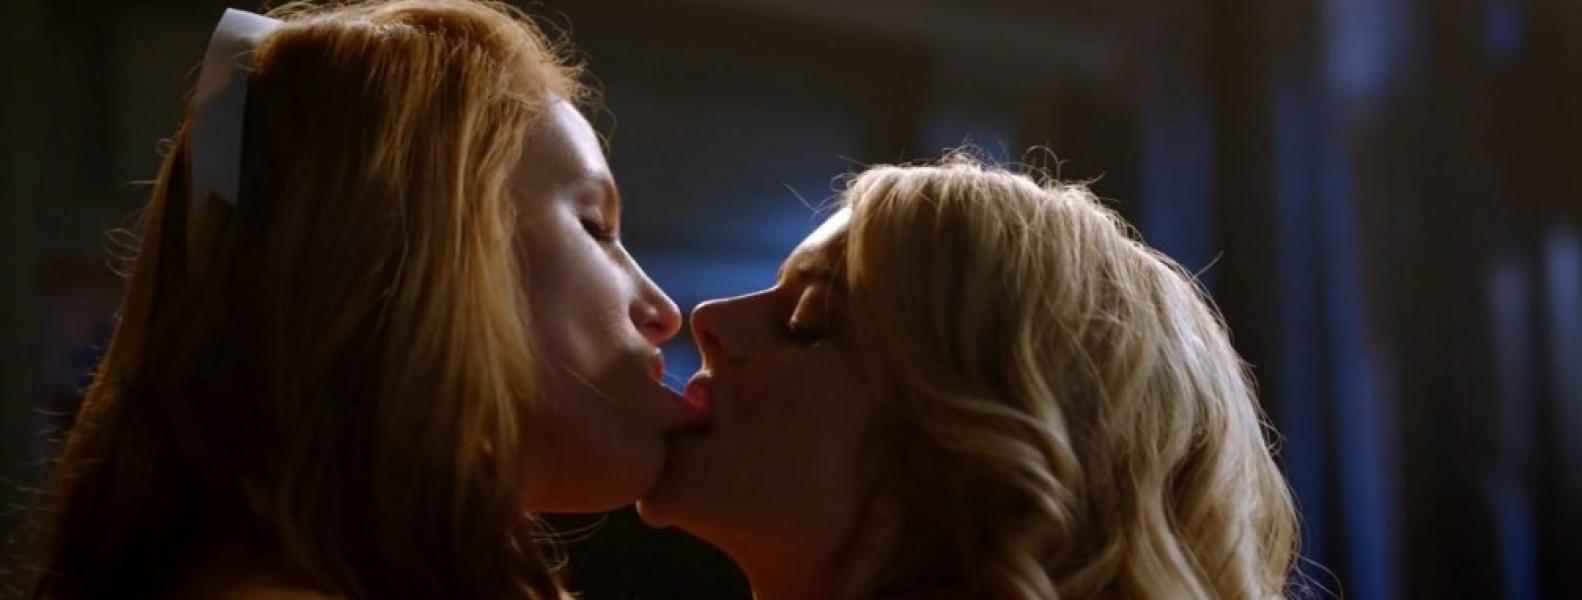 Белла Торн и Самара Уивинг фото лесбийских поцелуев 10